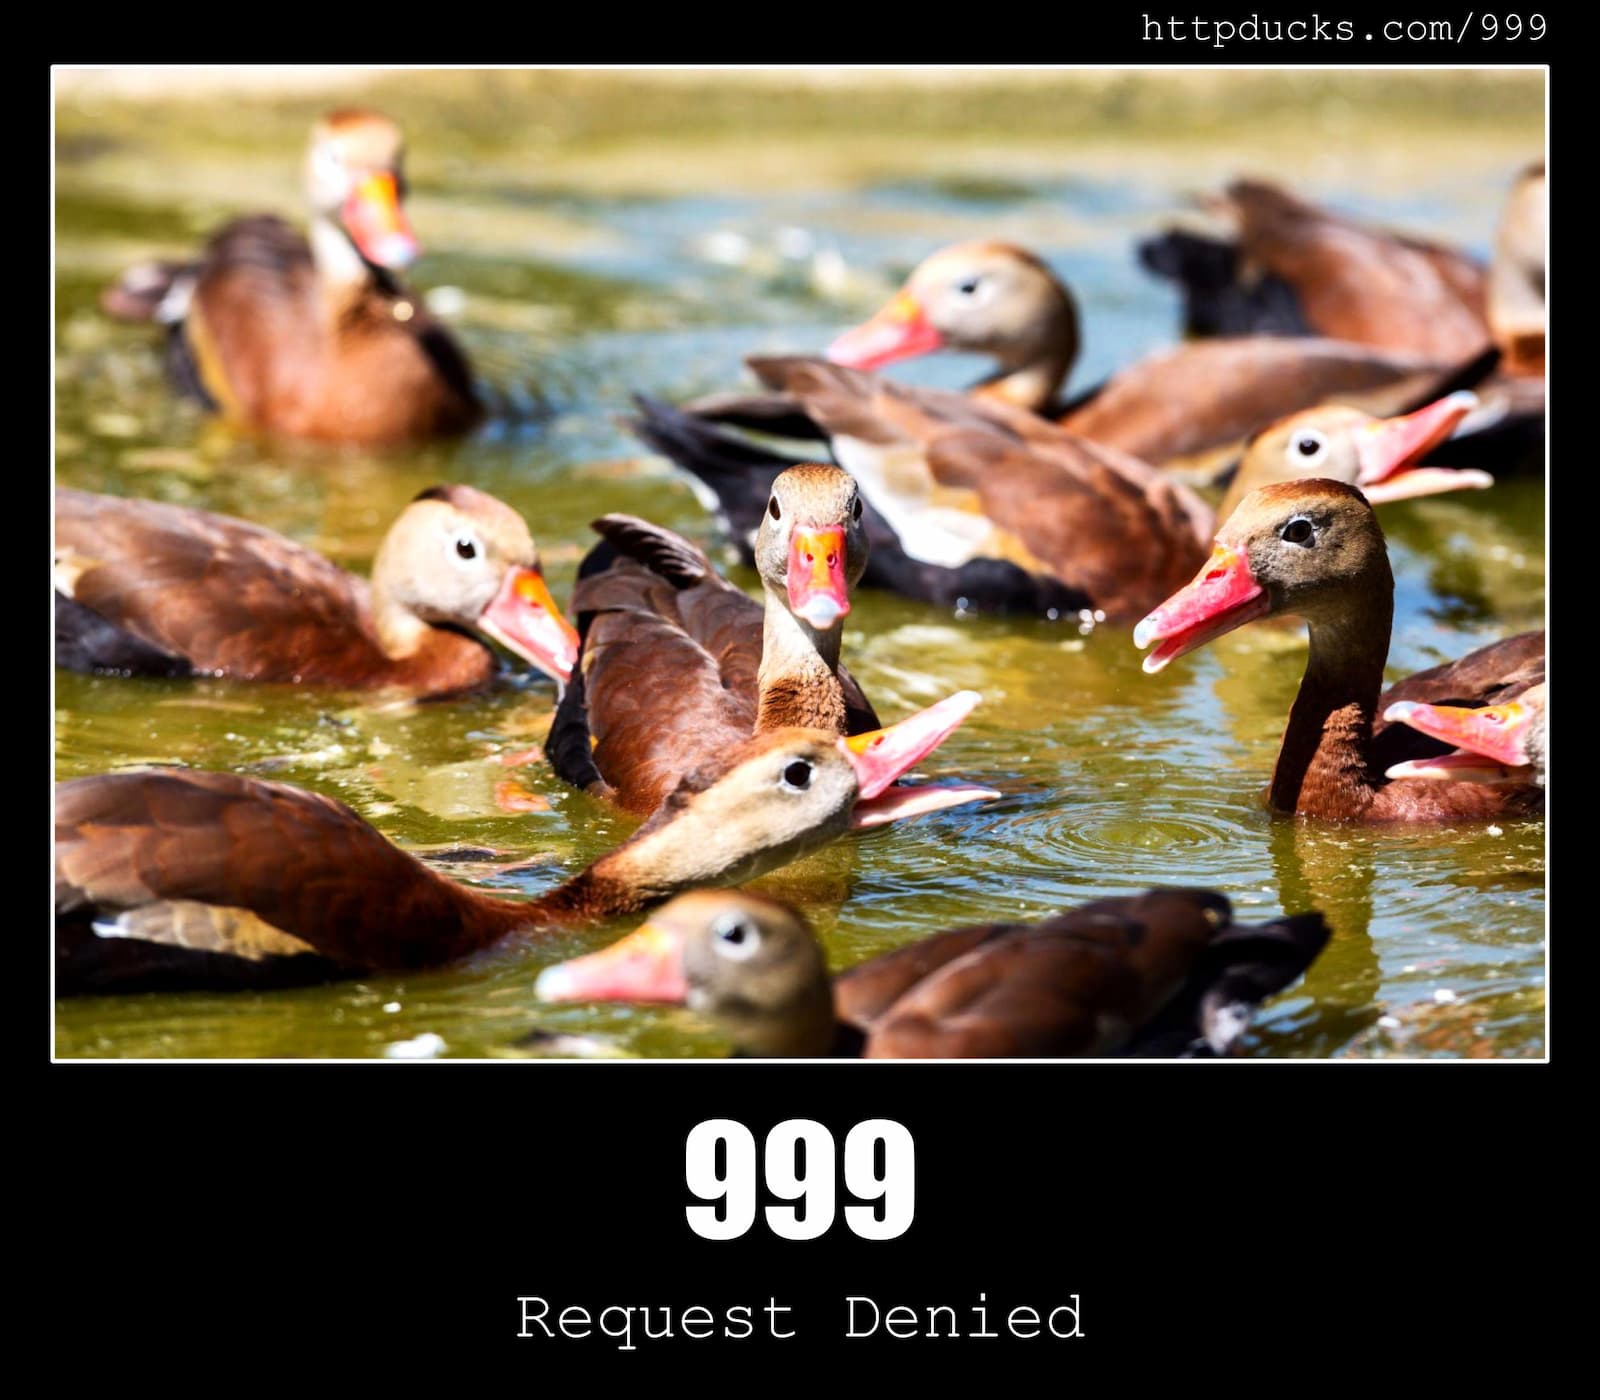 HTTP Status Code 999 Request Denied & Ducks